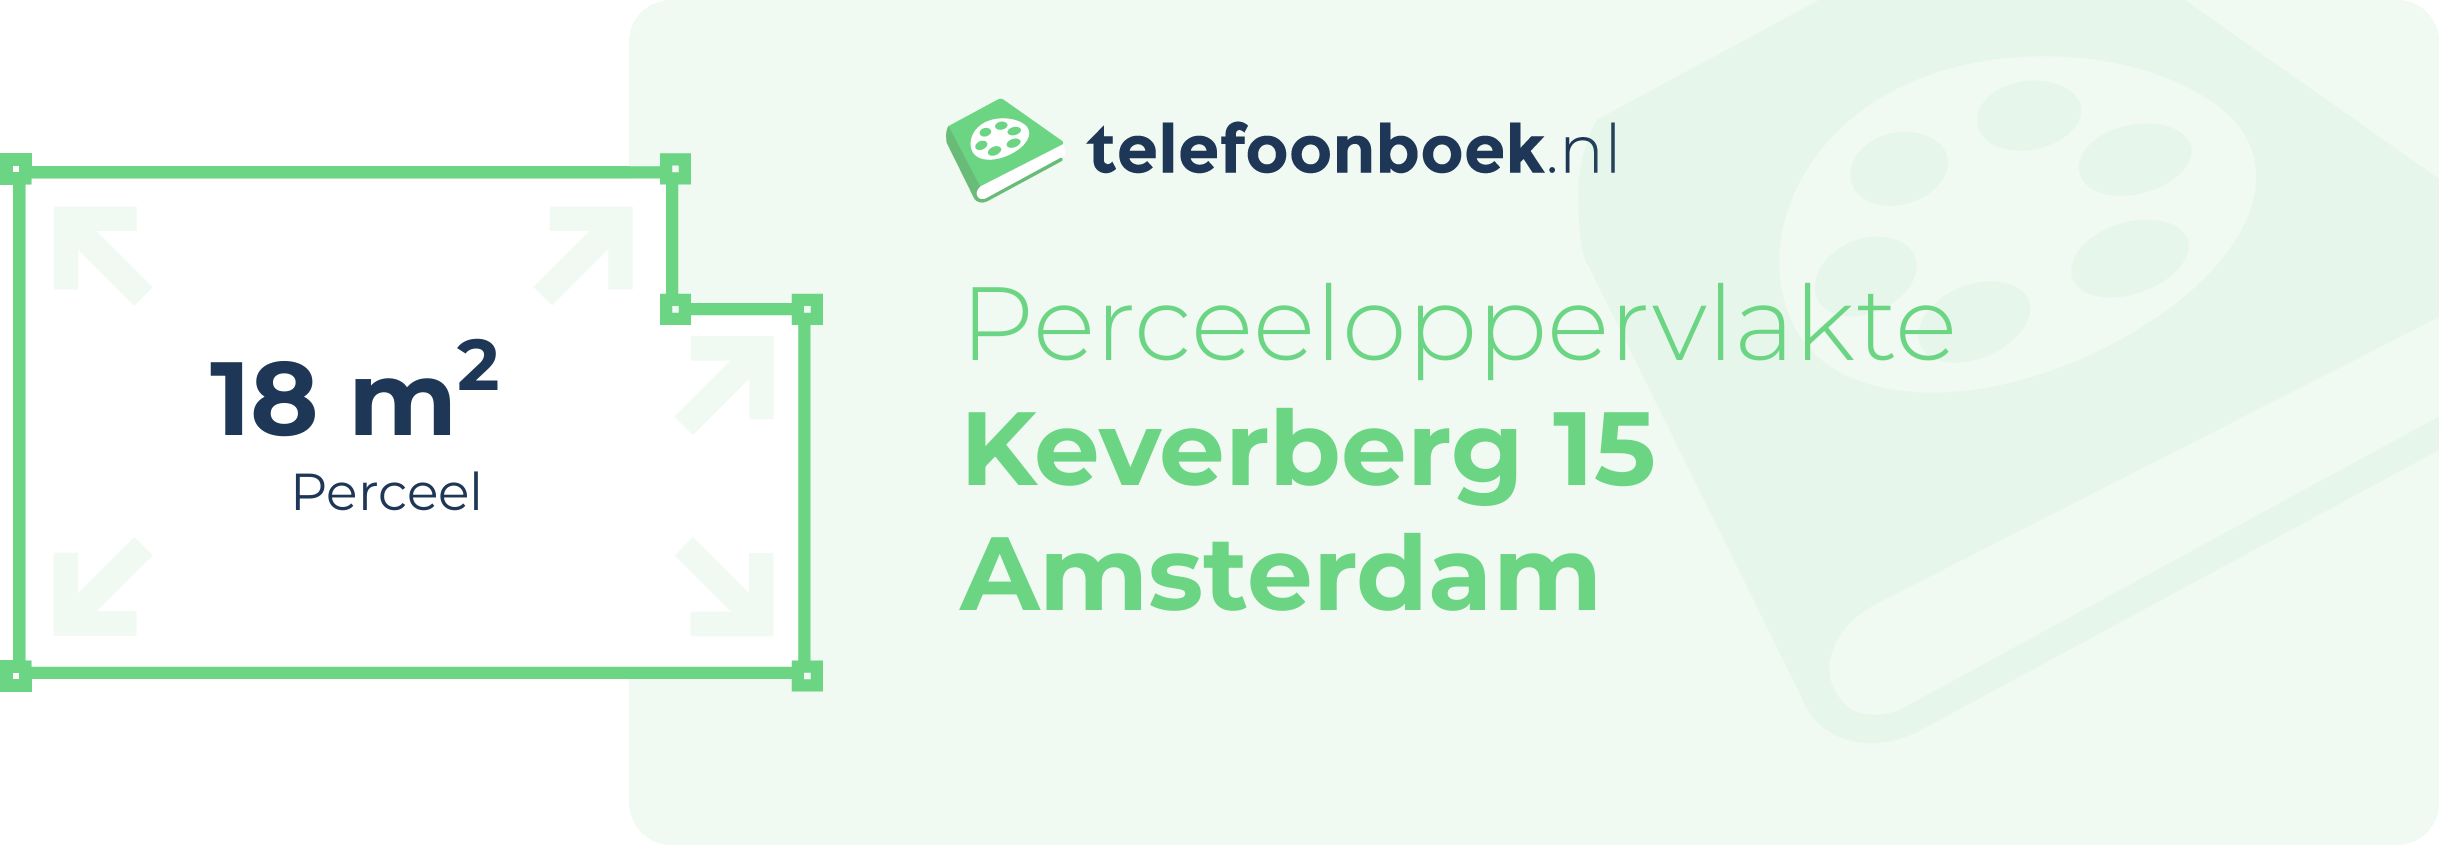 Perceeloppervlakte Keverberg 15 Amsterdam